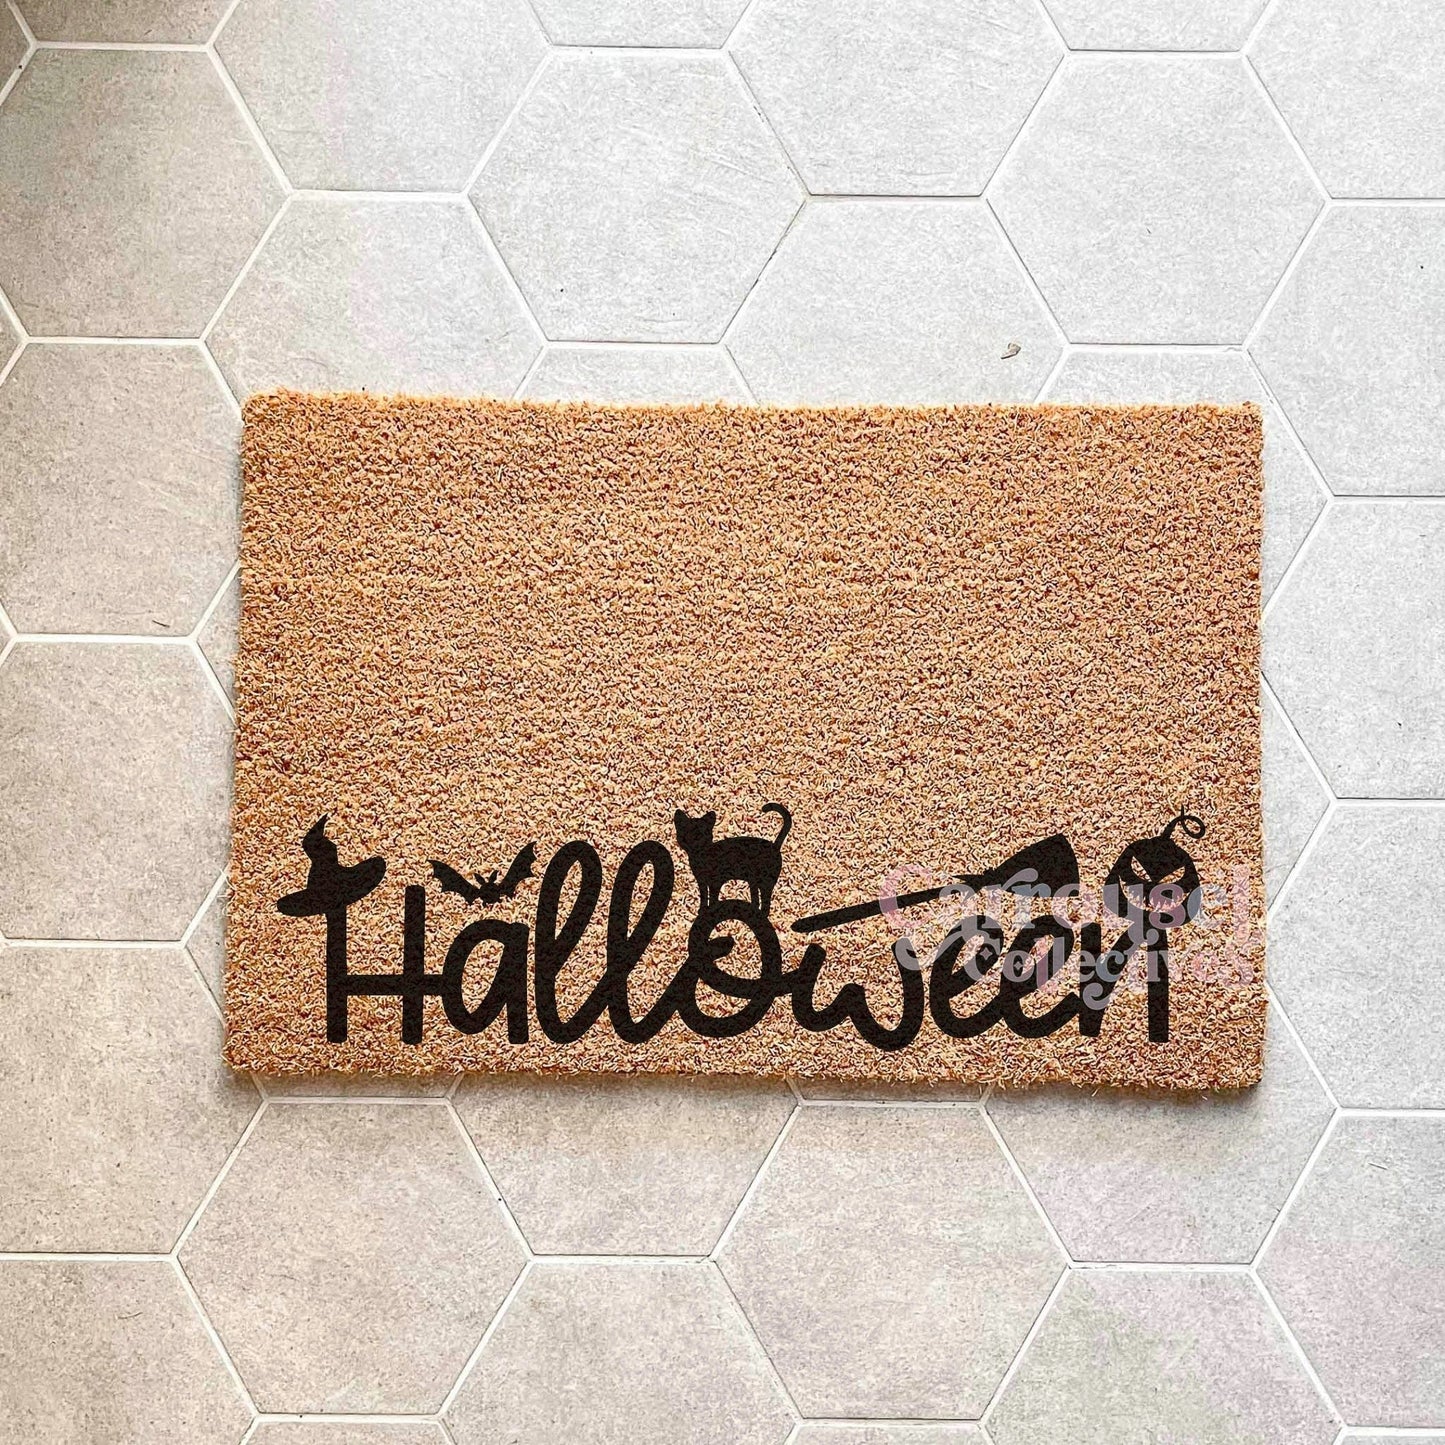 Halloween doormat, Halloween Doormat, Spooky Doormat, Creepy Doormat